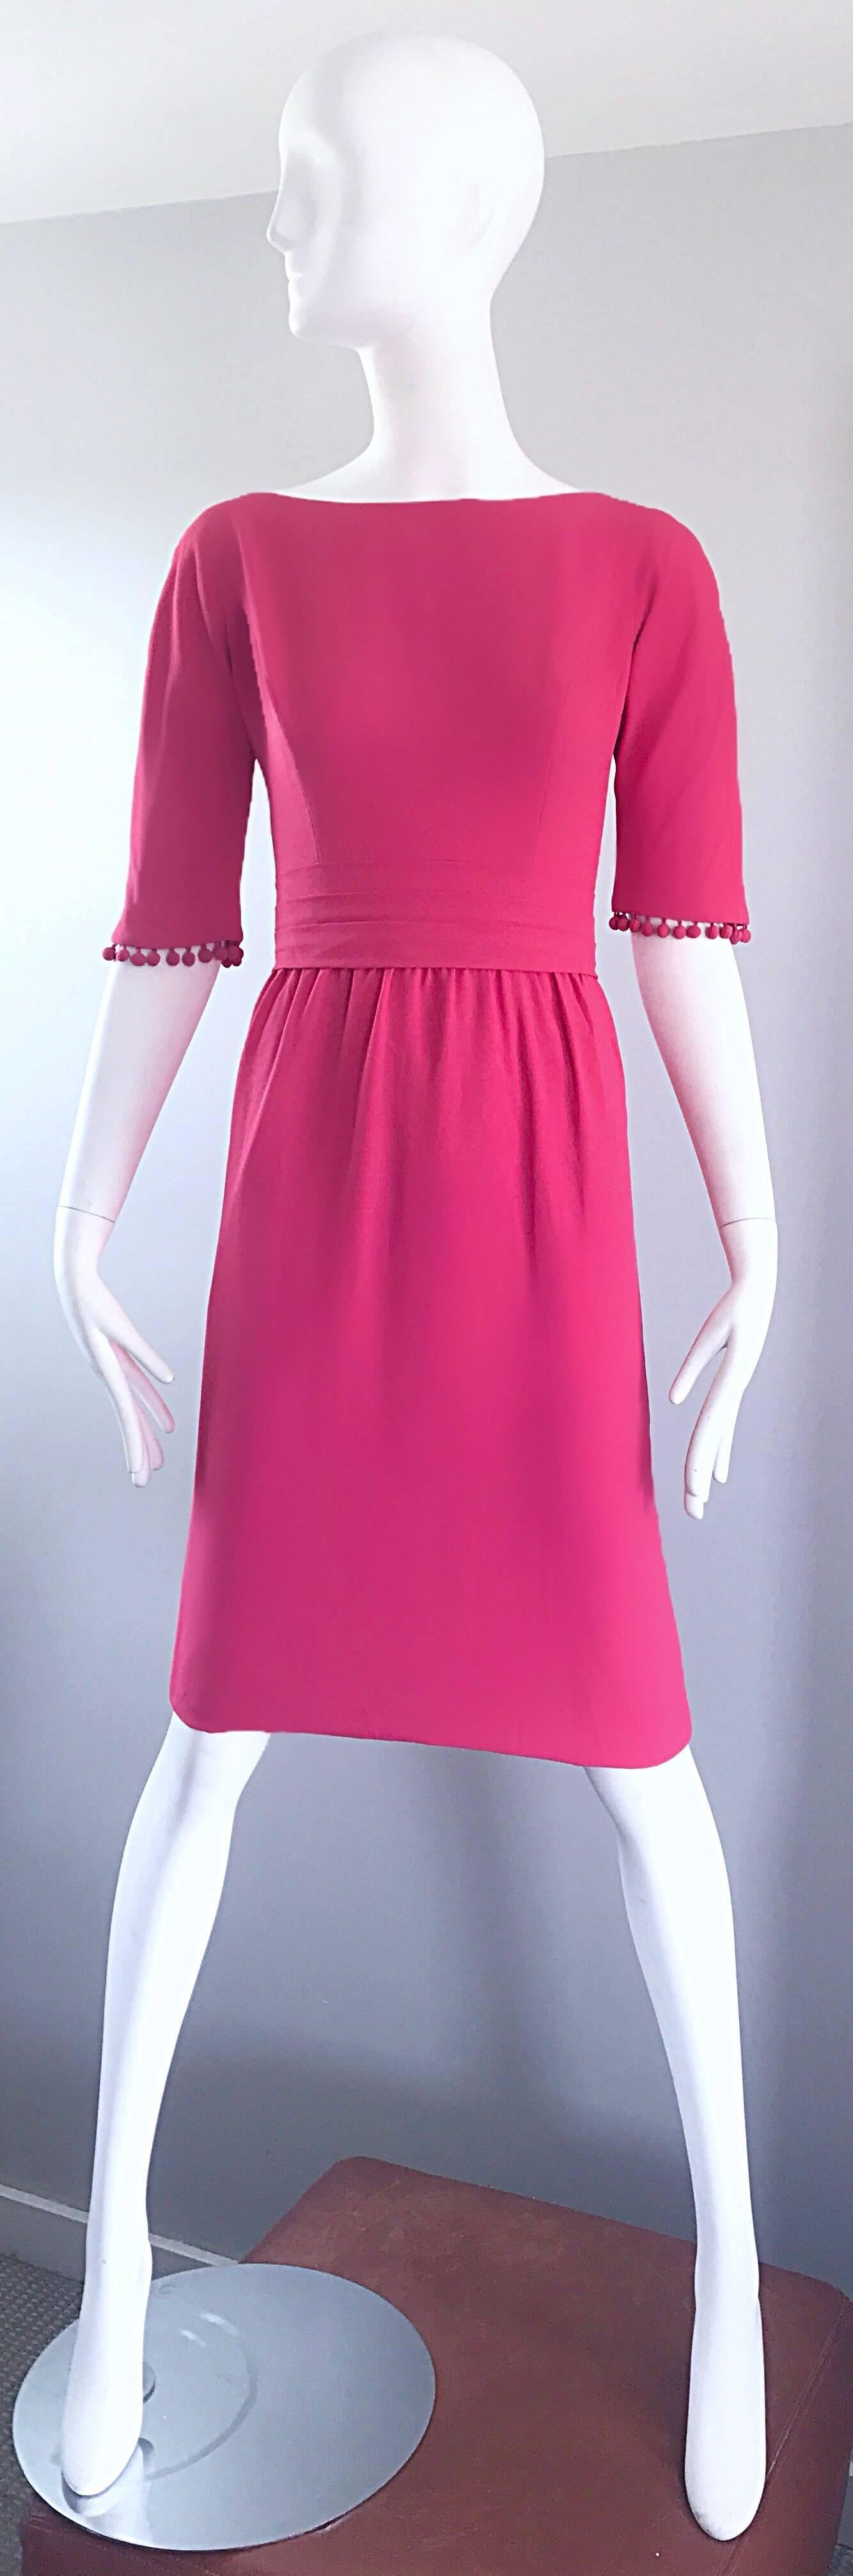 Magnifique robe demi-couture des années 1950 en crêpe rose framboise ! Des boules de pom pom sont attachées aux poignets de chaque manche. Des pompons figurent également sur la traîne dans le dos. Fermeture à glissière entièrement métallique dans le